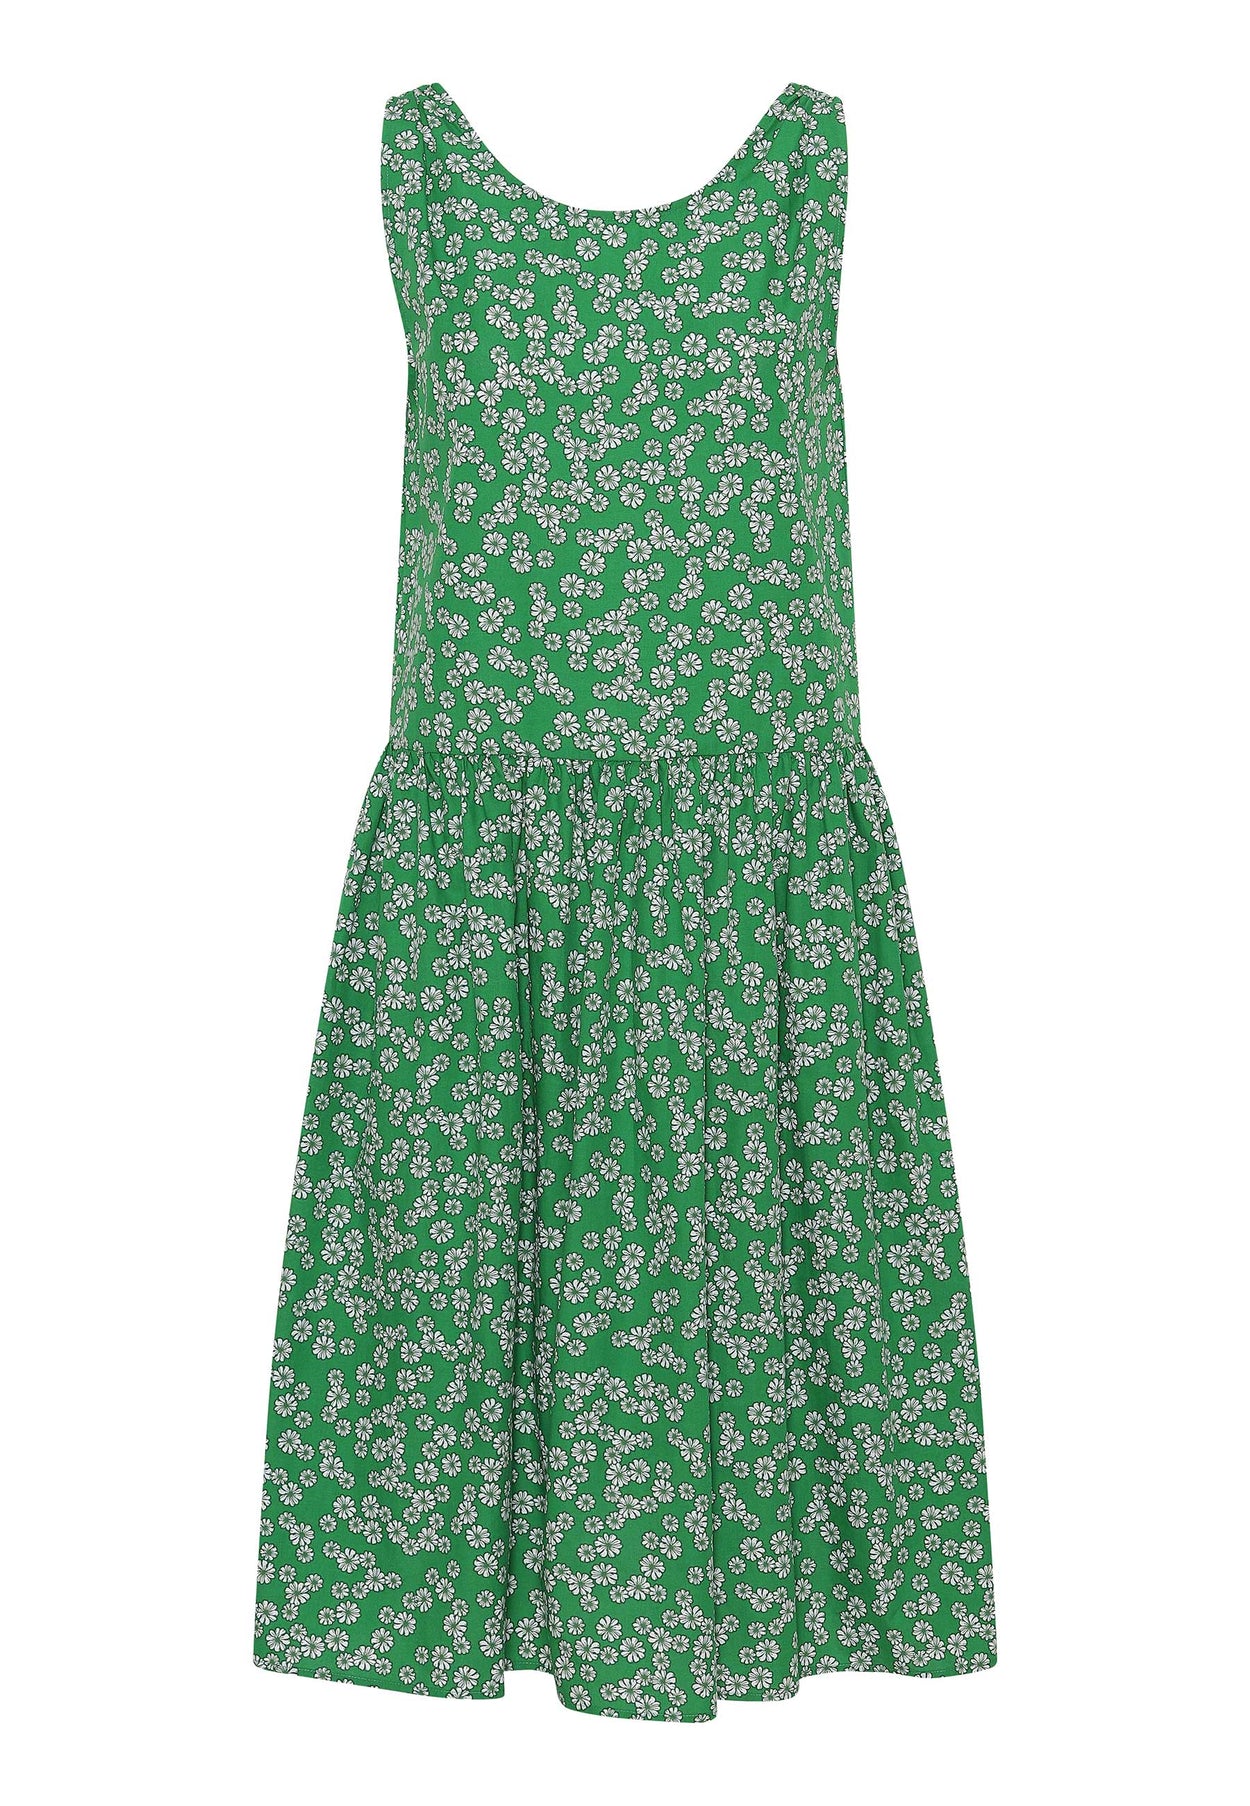 GROBUND Vilma kjolen - den vendbare i grøn med blomster